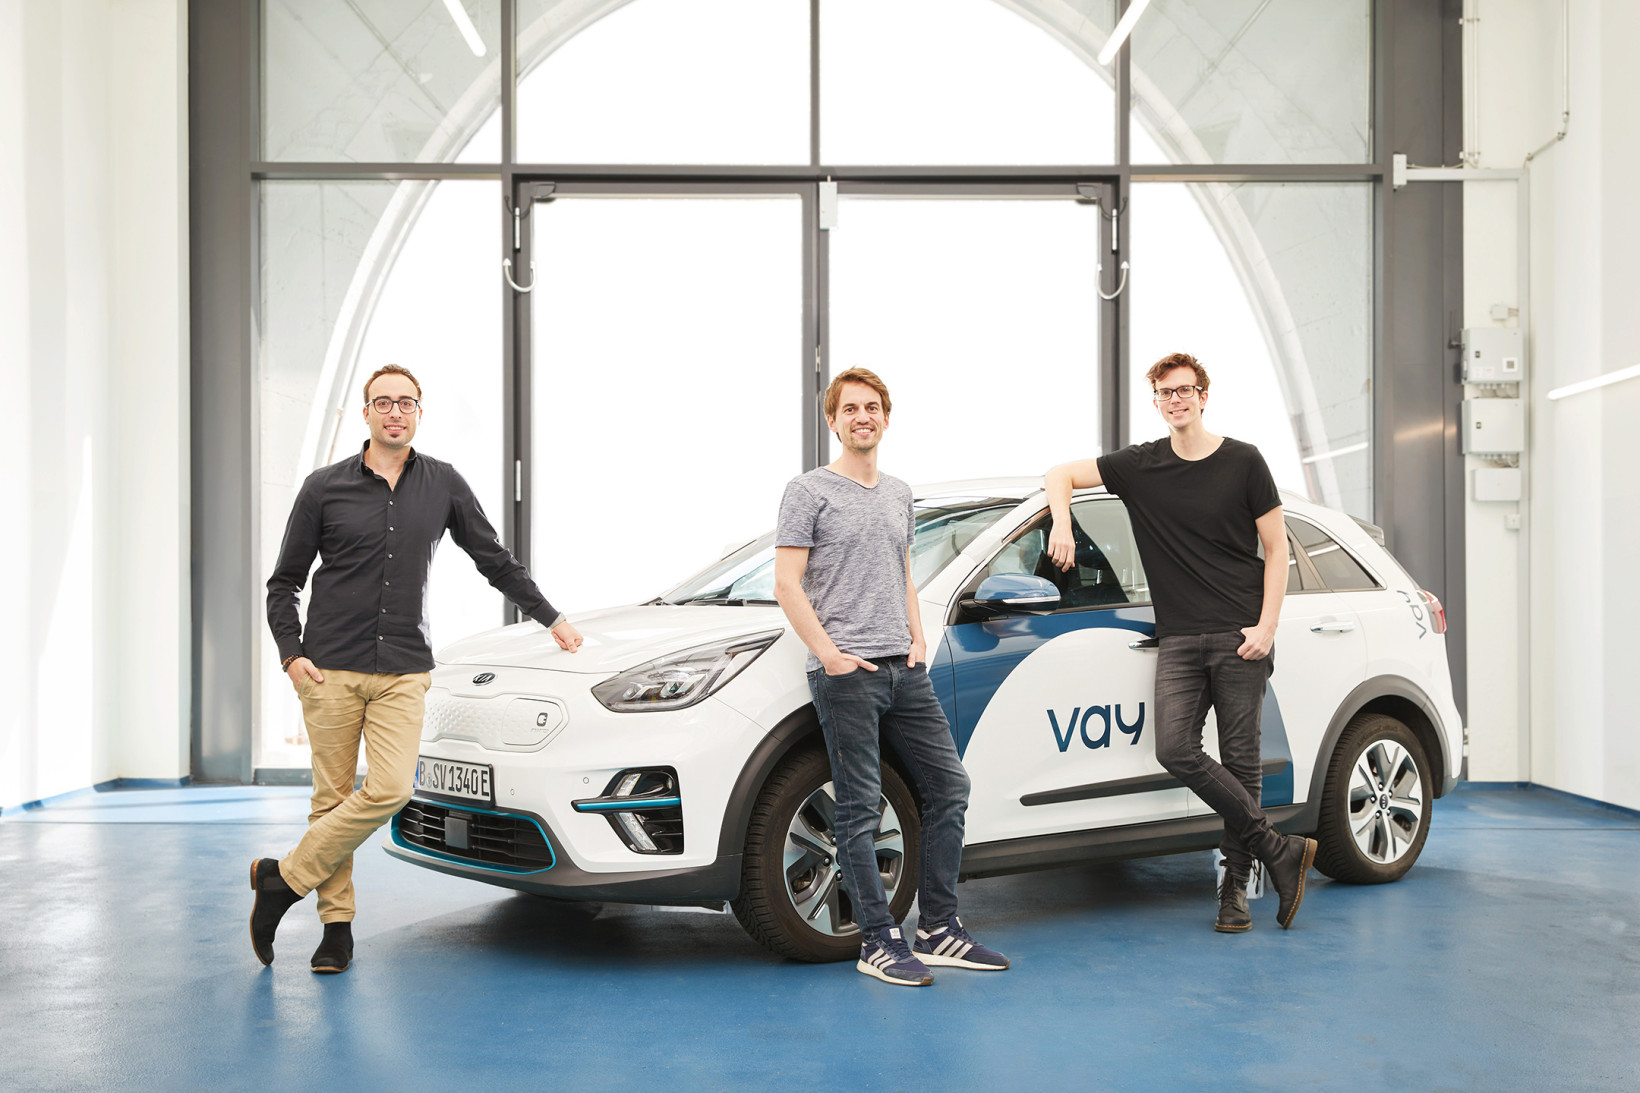 I fondatori della startup. Da sinistra verso destra: Fabrizio Scelsi, Thomas von der Ohe e Bogdan Djukic. Foto: Vay